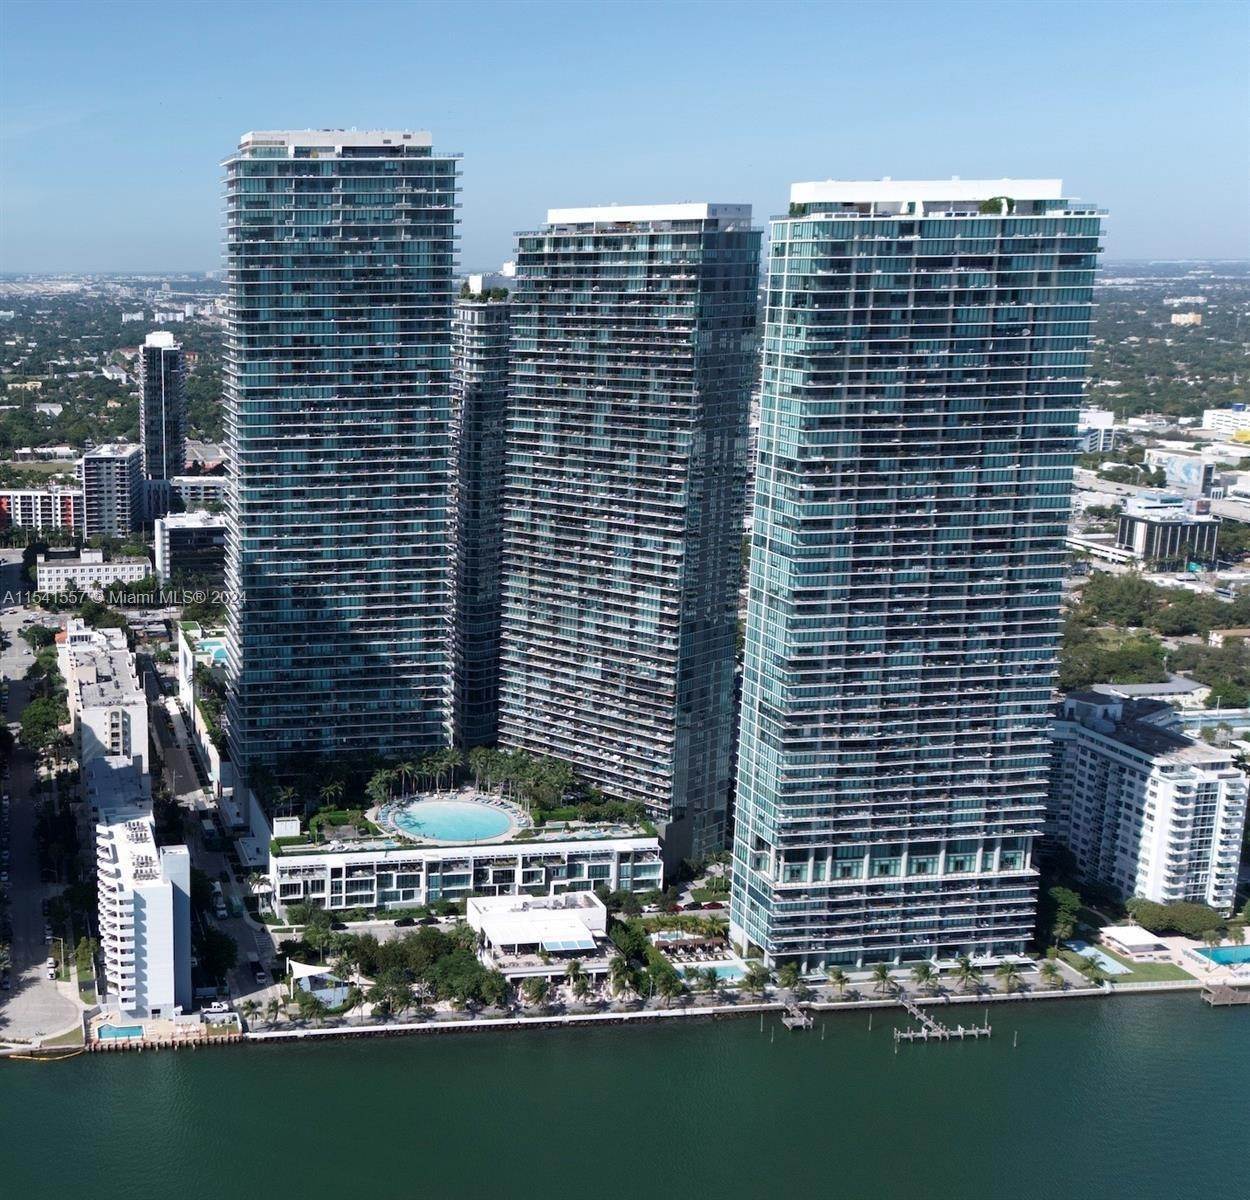 Condominium for Sale at Edgewater, Miami, FL 33137